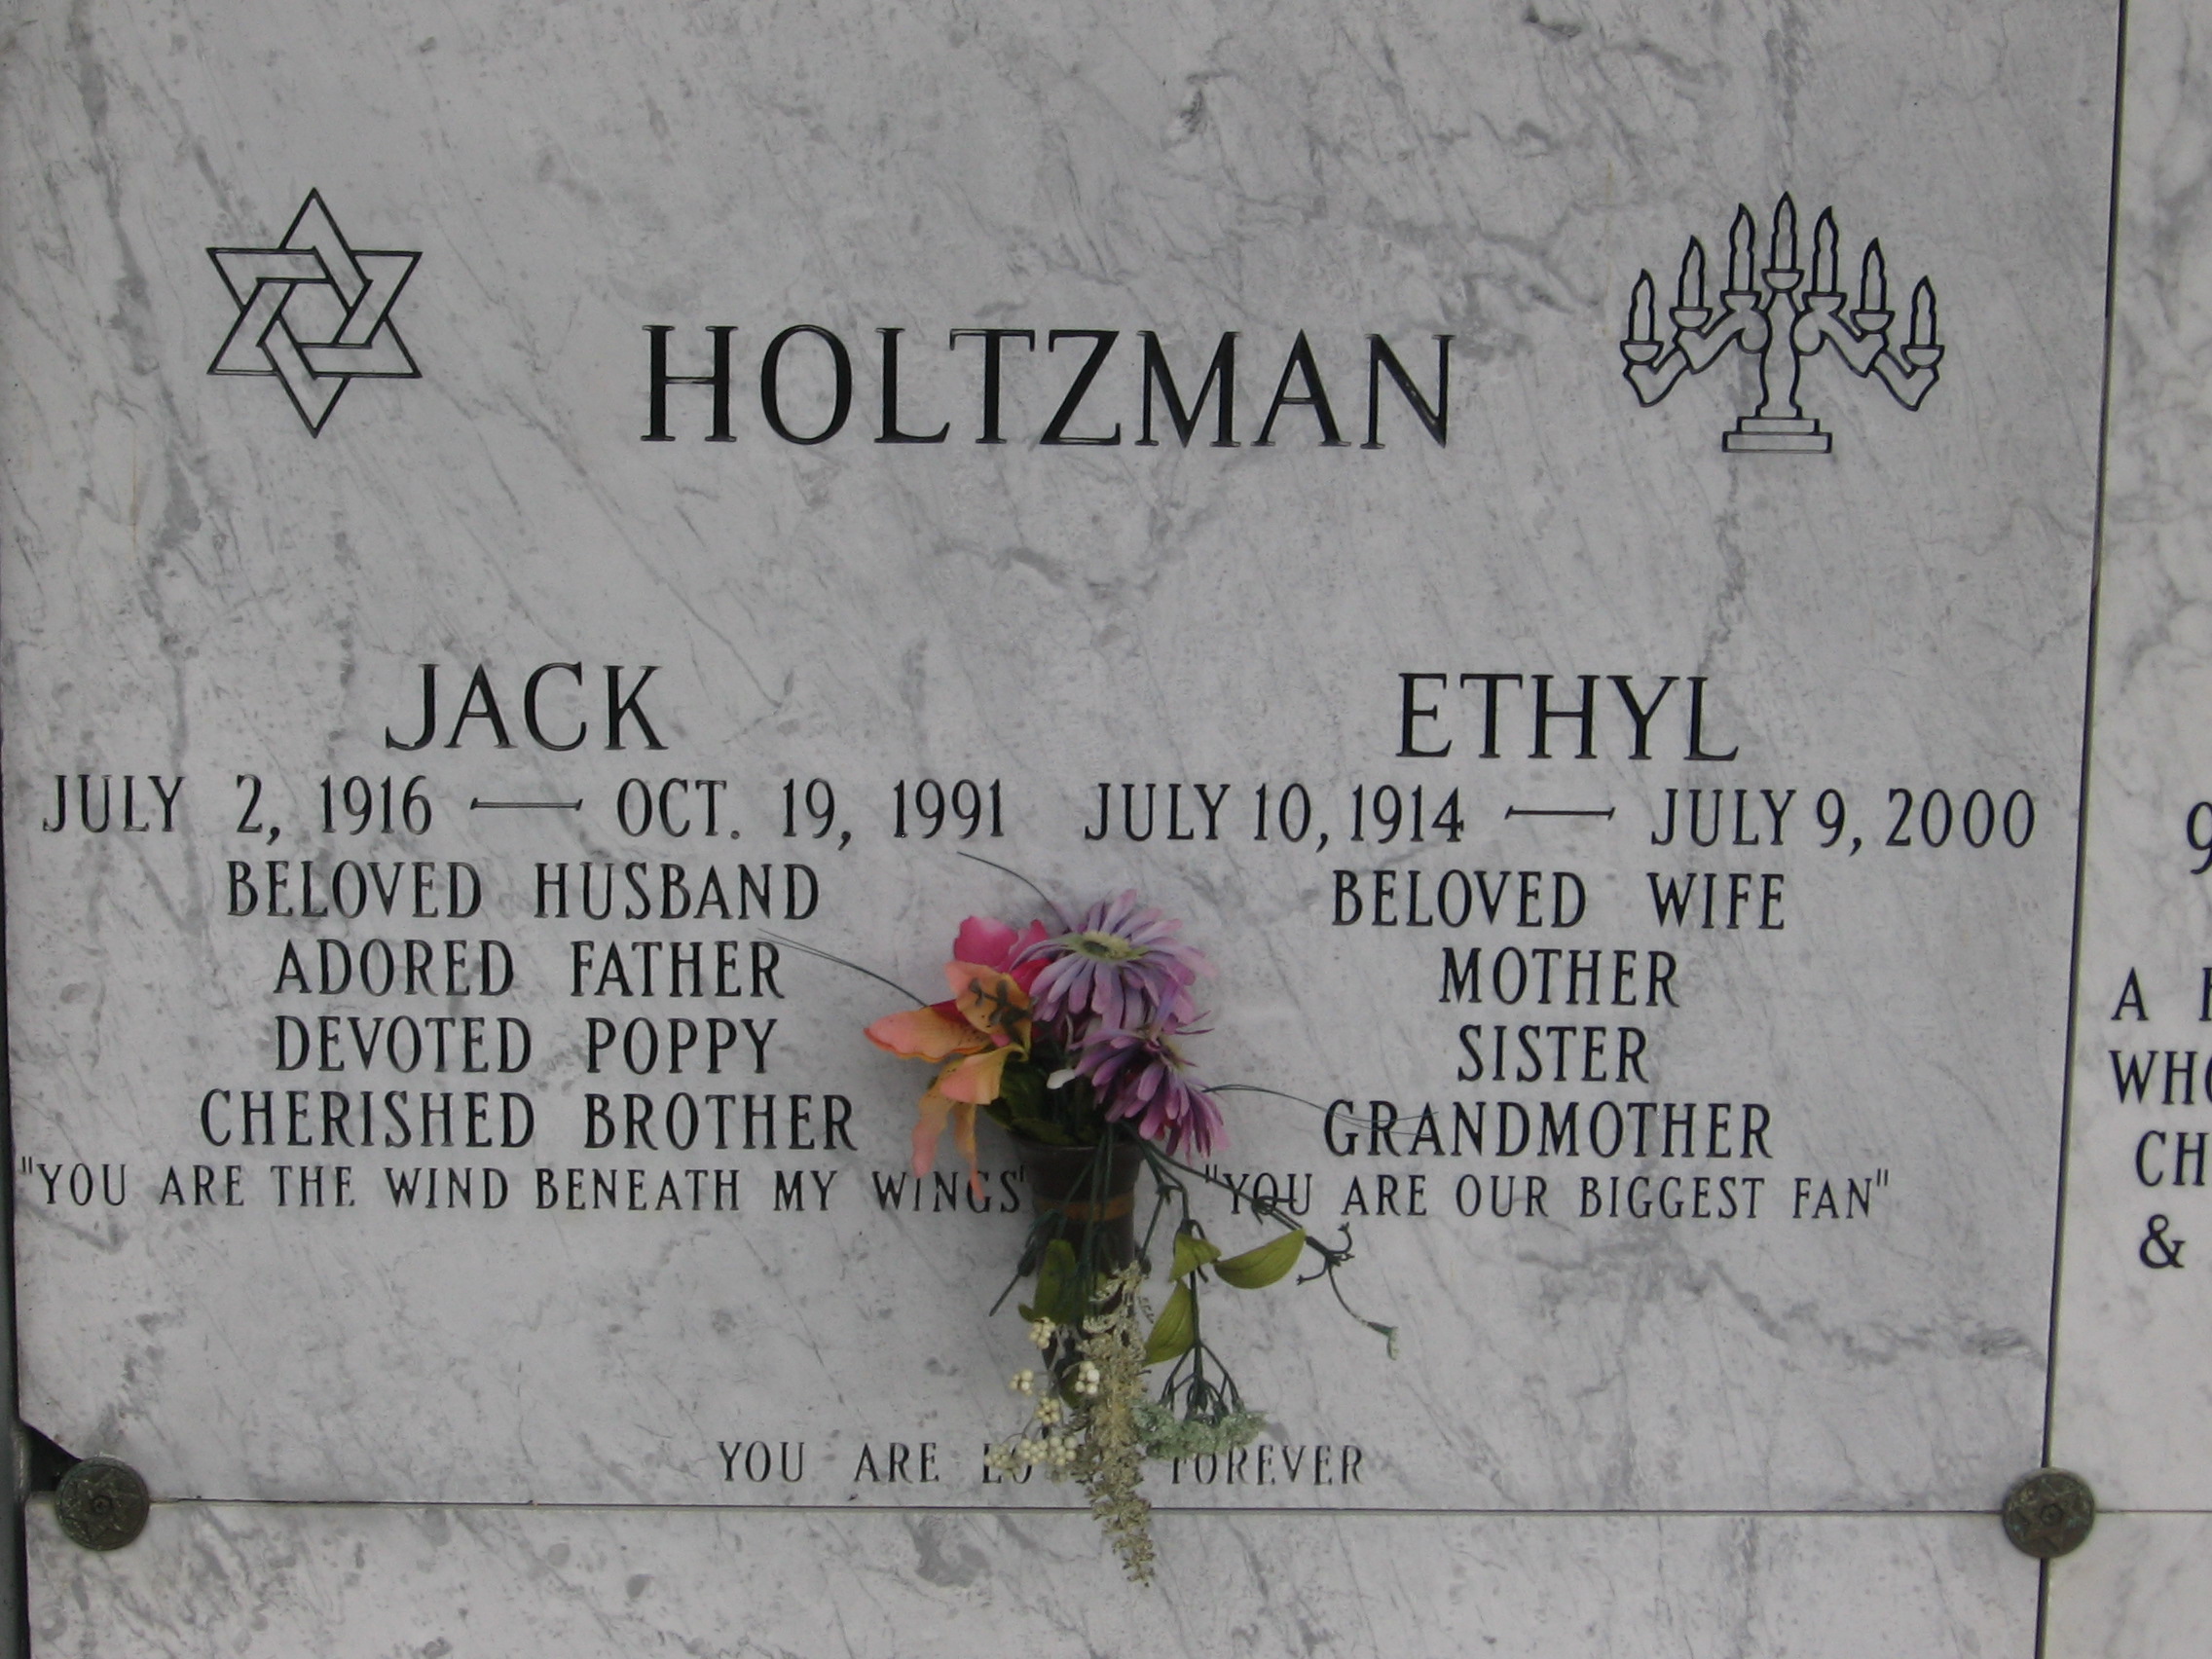 Jack Holtzman